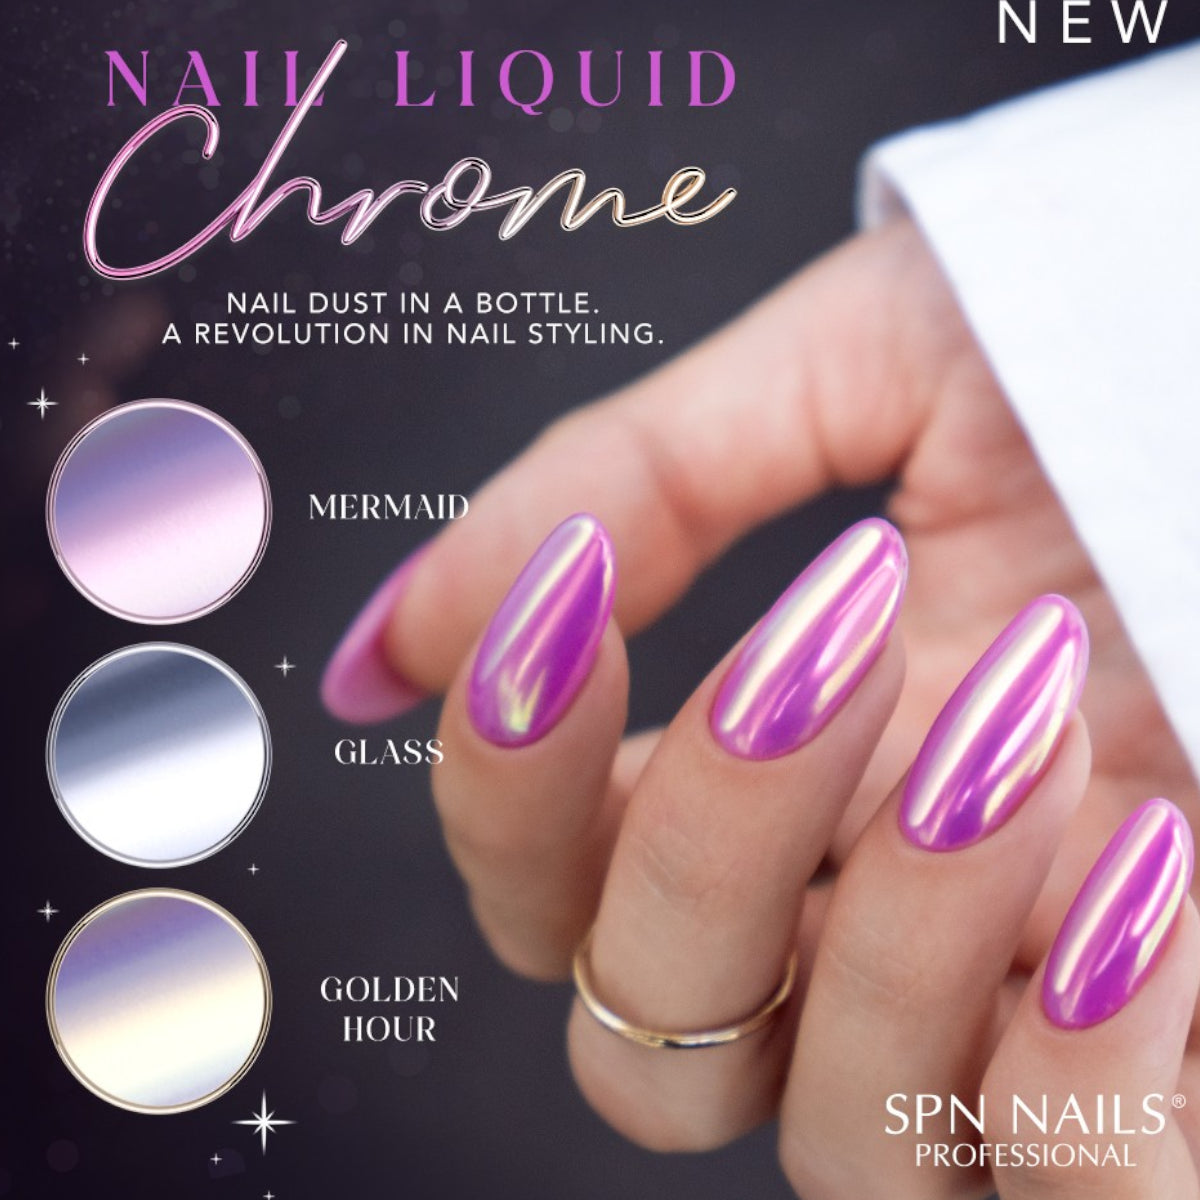 SPN Nails Nail Liquid Chrome Glass Nail Dust Info